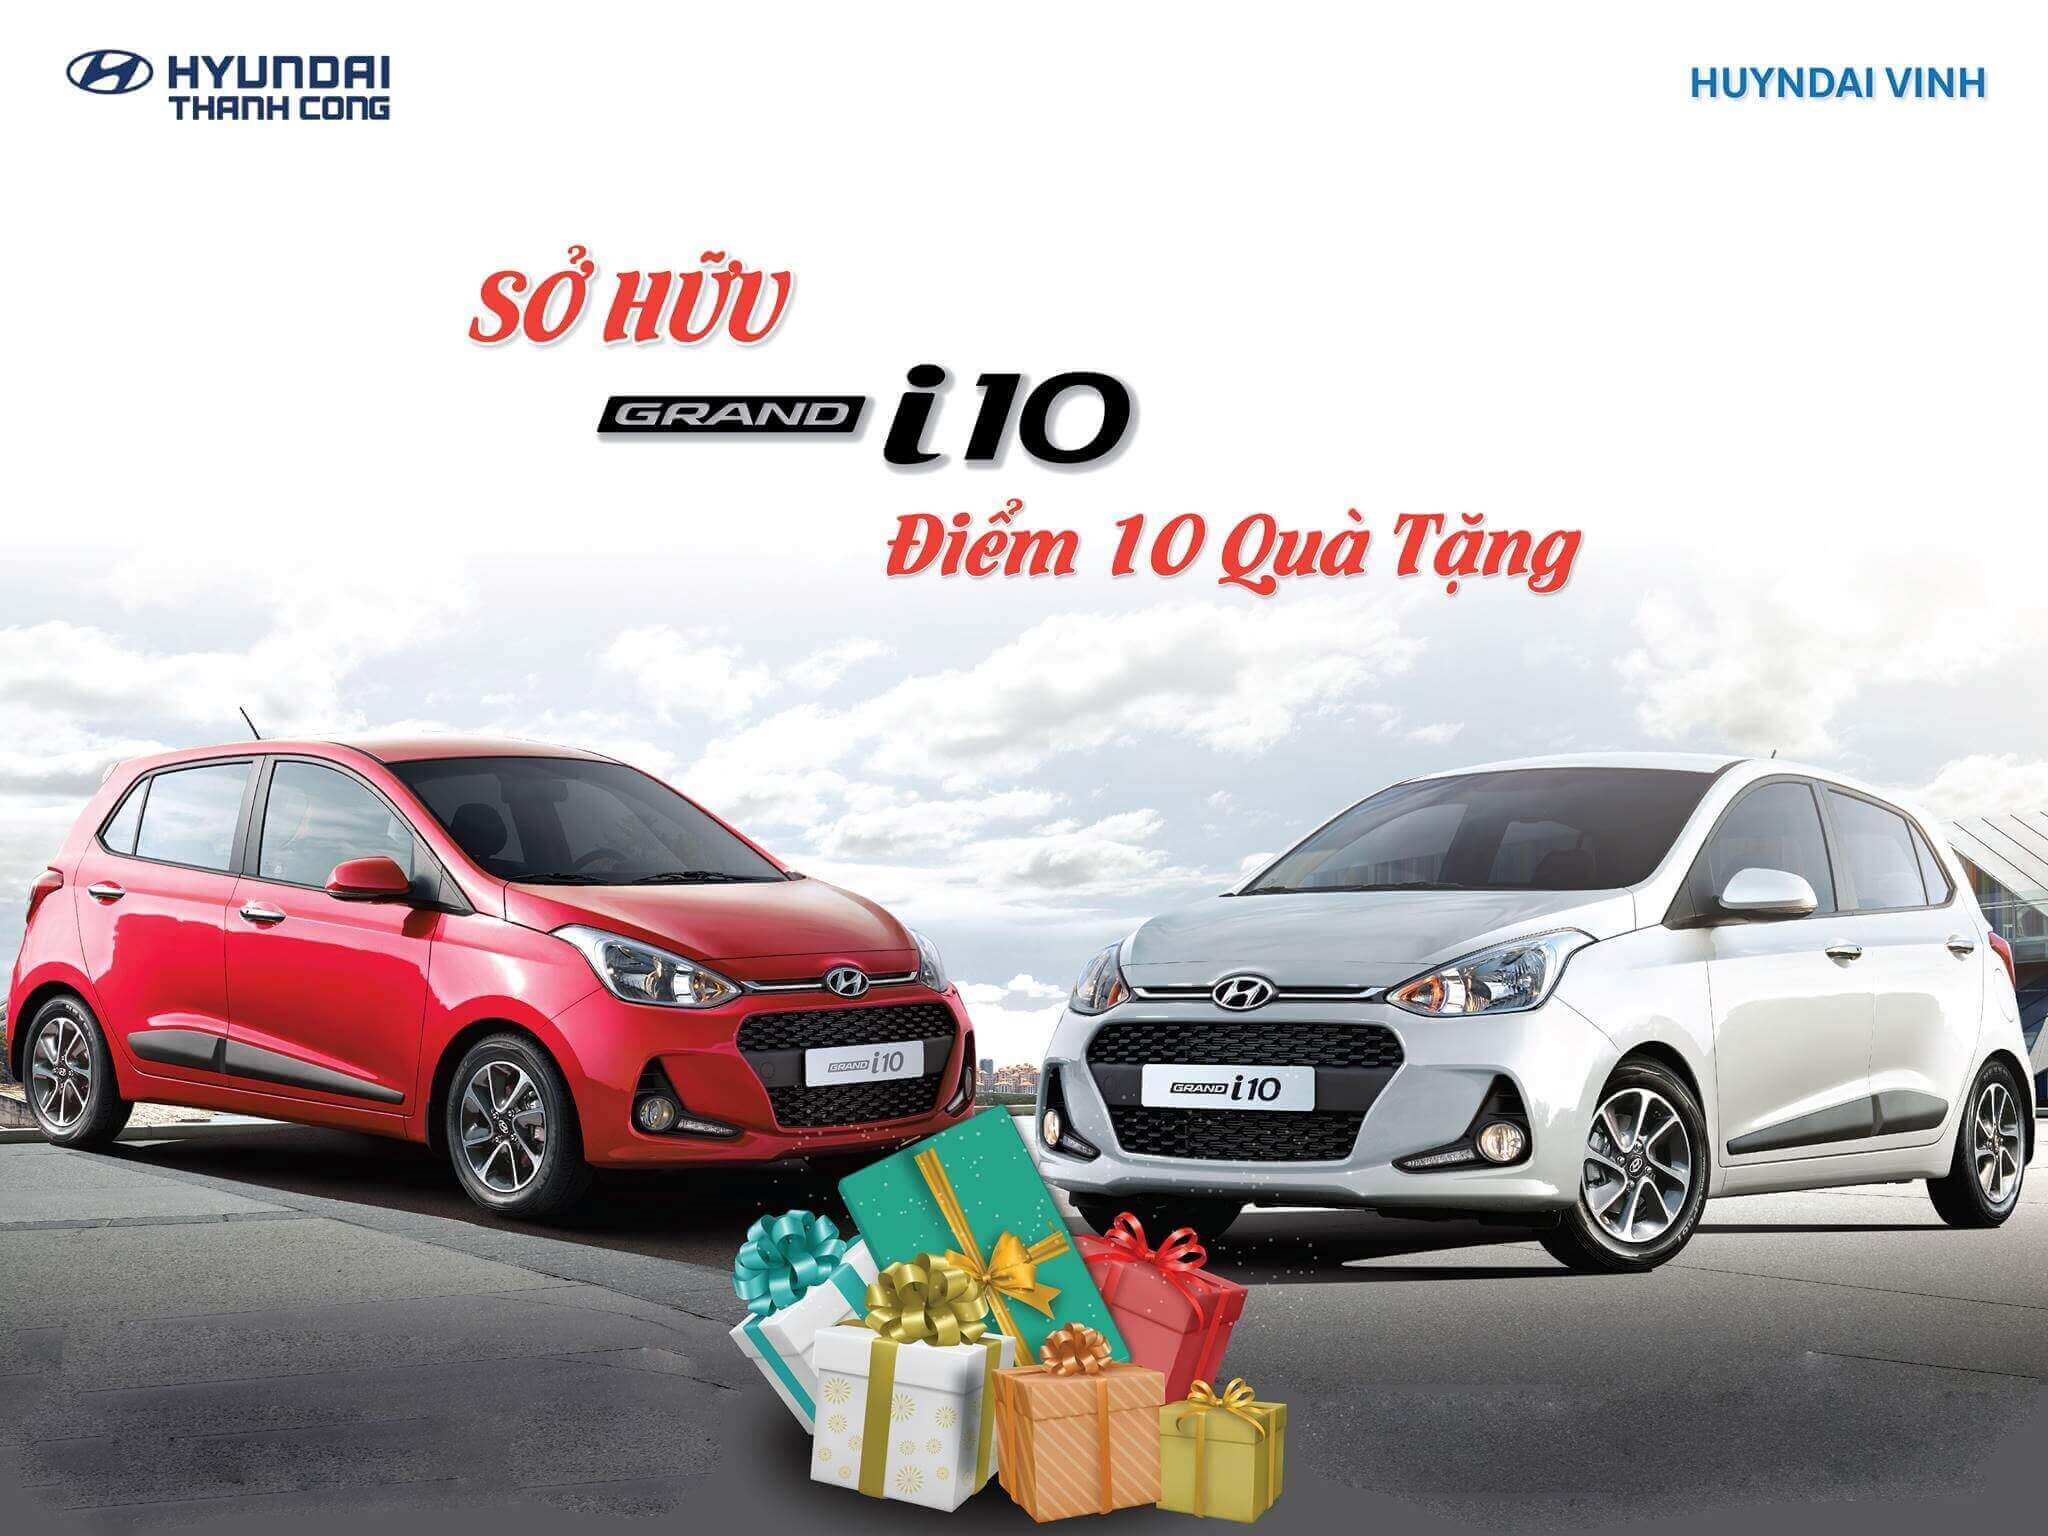 Hyundai Vinh - Sở hữu Grand I10 Điểm 10 quà tặng